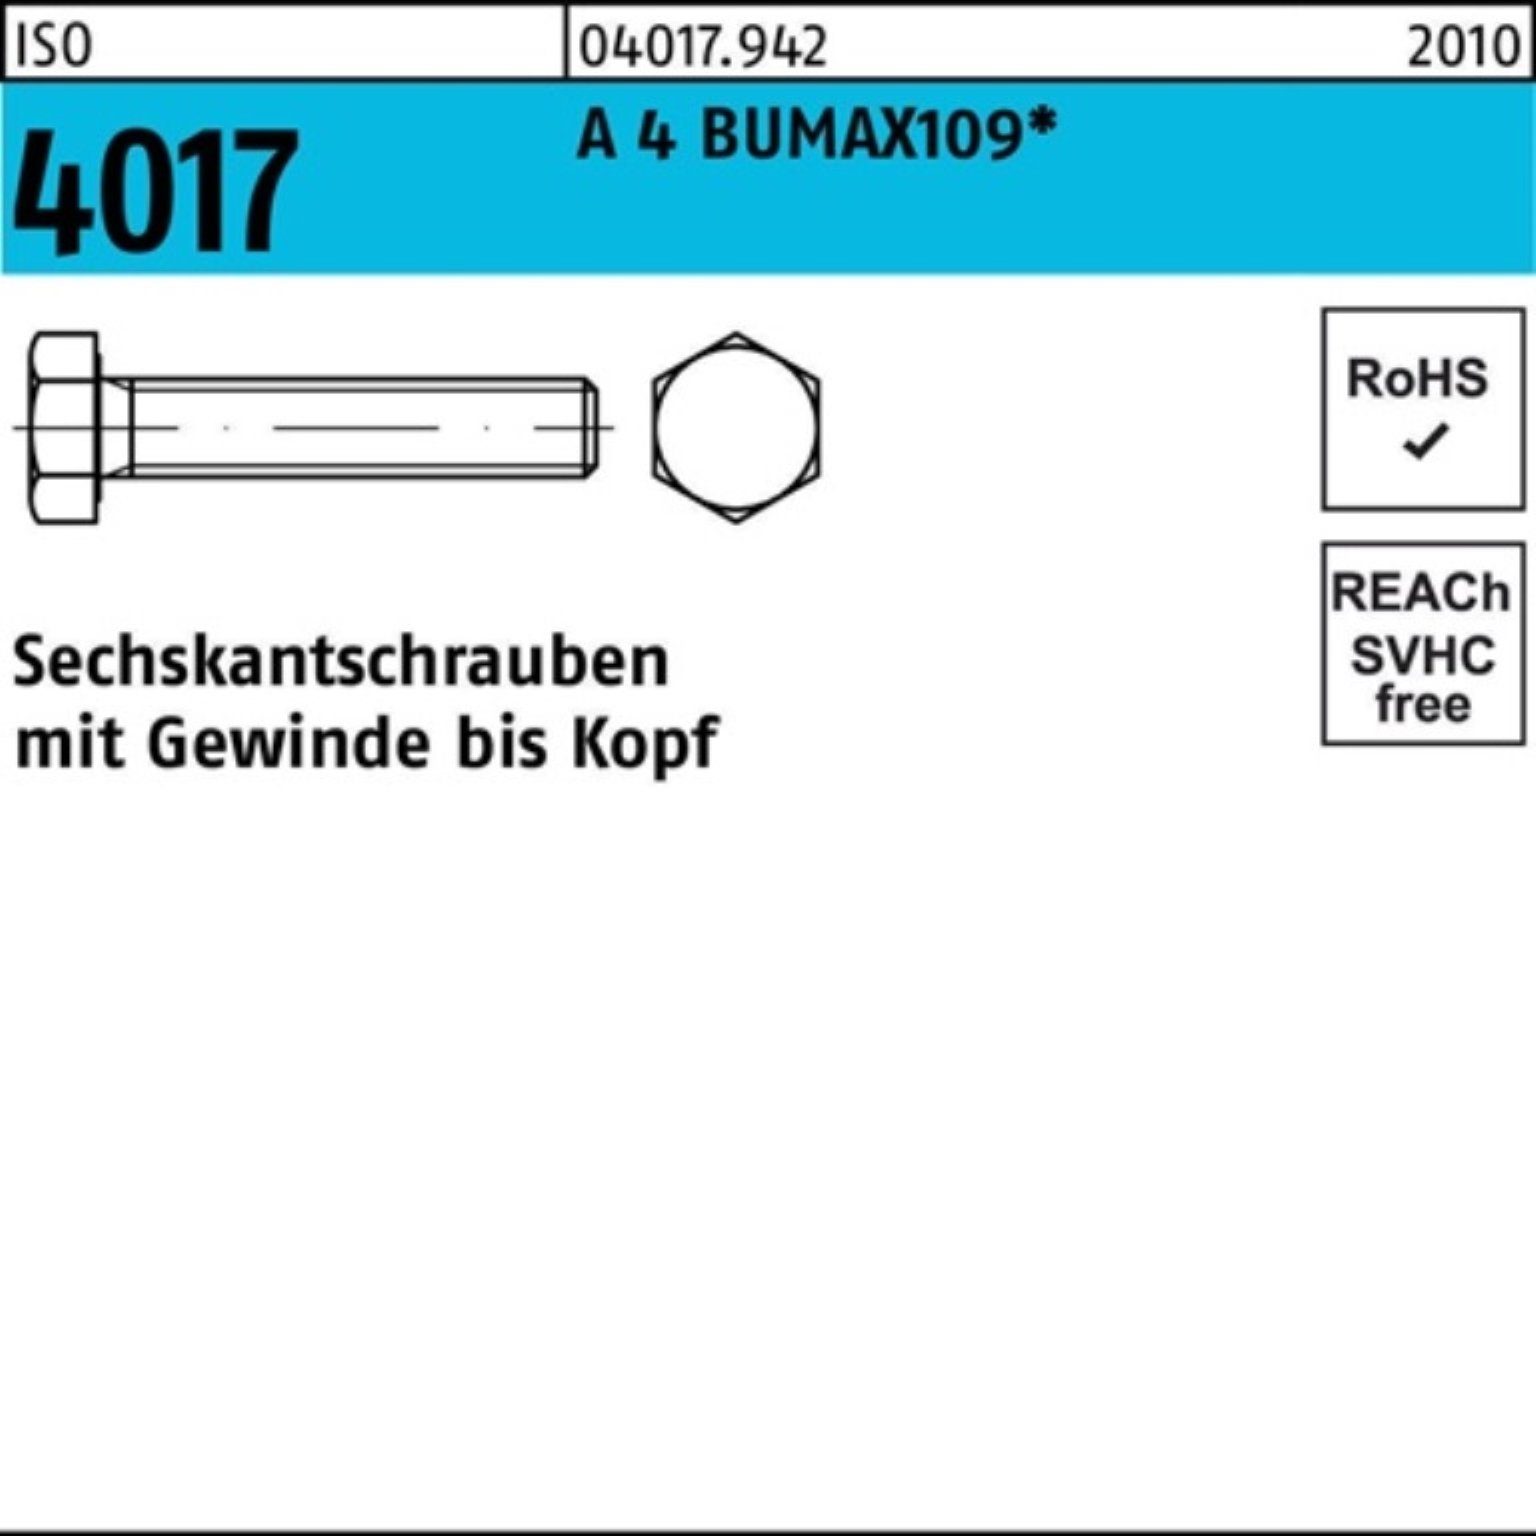 Bufab Sechskantschraube 100er Pack Sechskantschraube ISO 4017 VG M16x 40 A 4 BUMAX109 25 Stüc